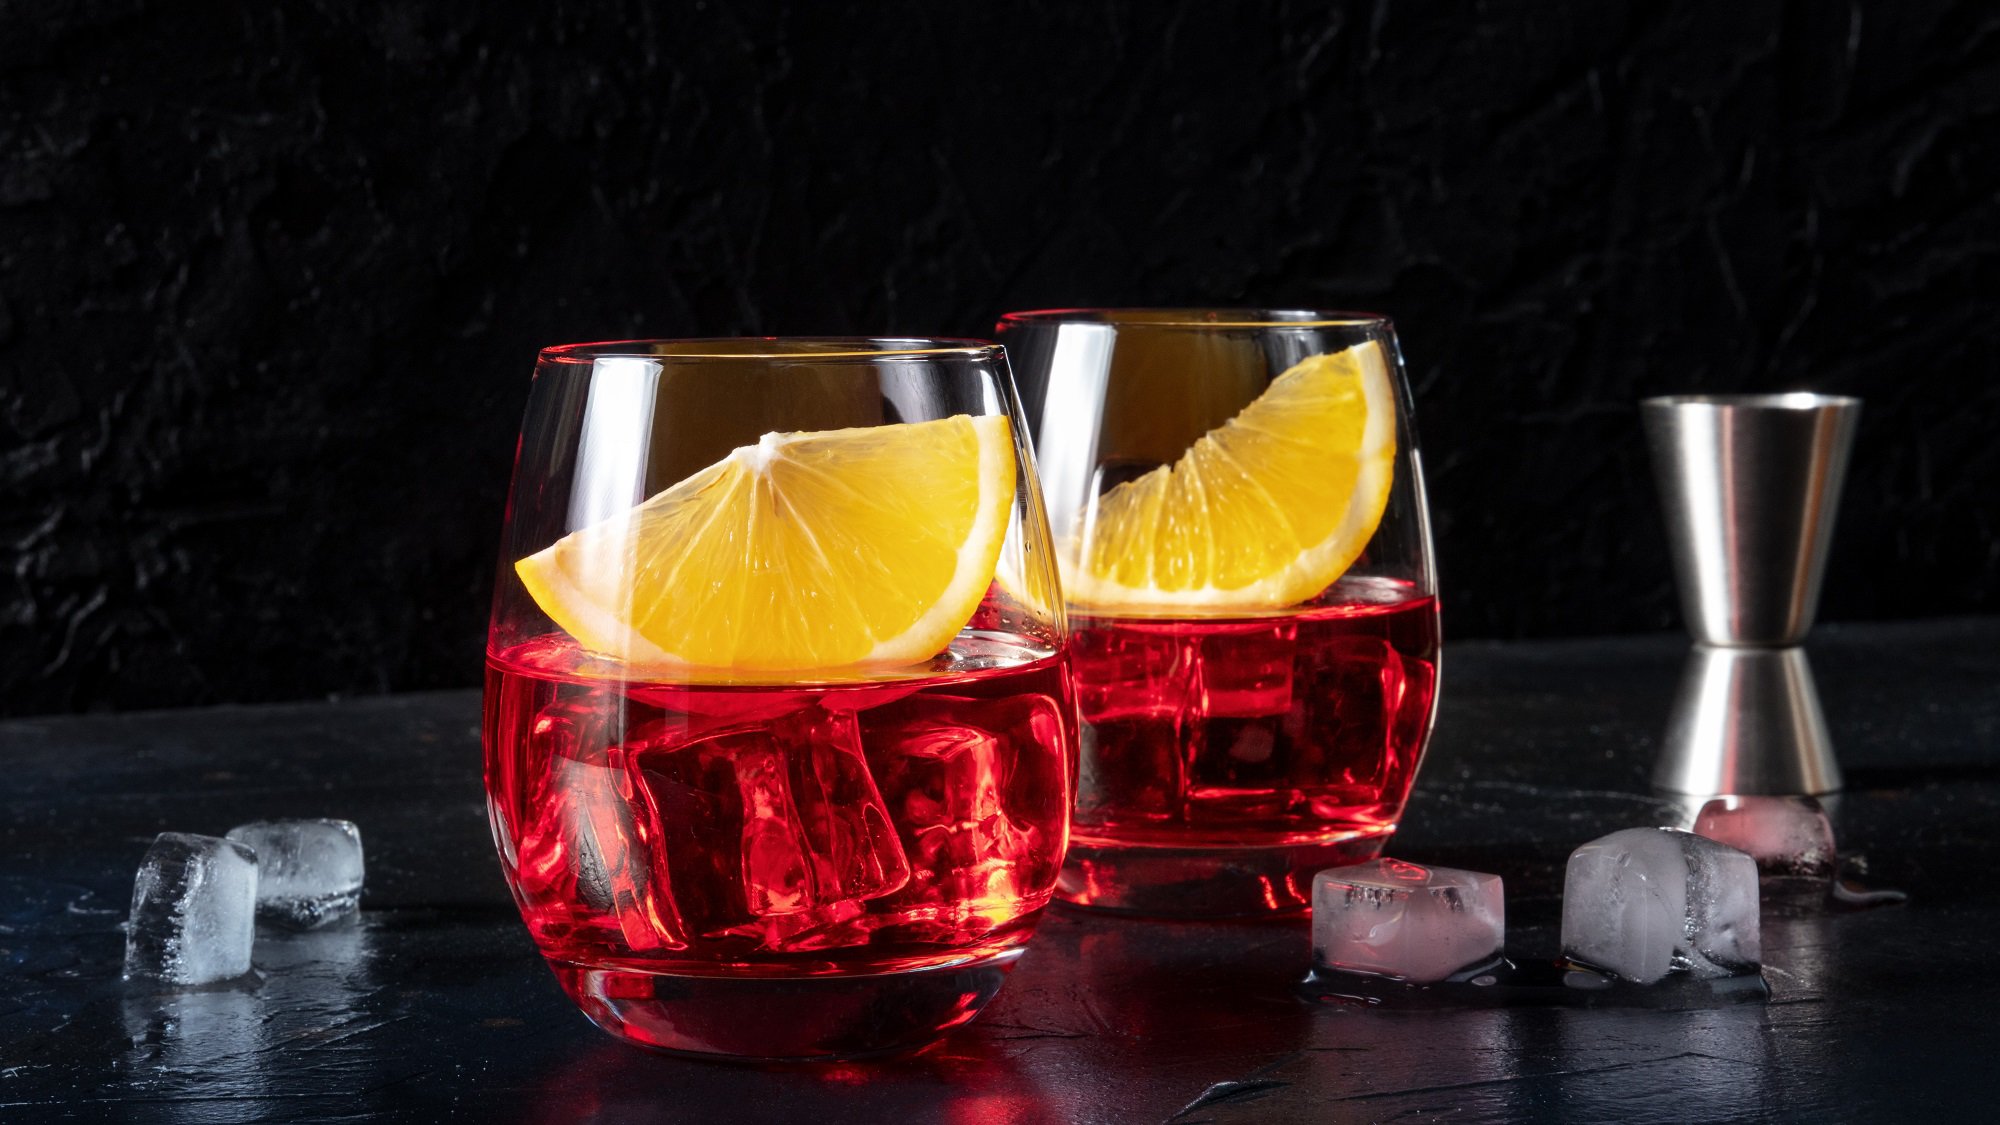 Zwei Gläser Wermut-Spritz mit Eiswürfeln und je einer Orangenspalte vor dunklem Hintergrund, daneben ein Cocktail-Messbecher.